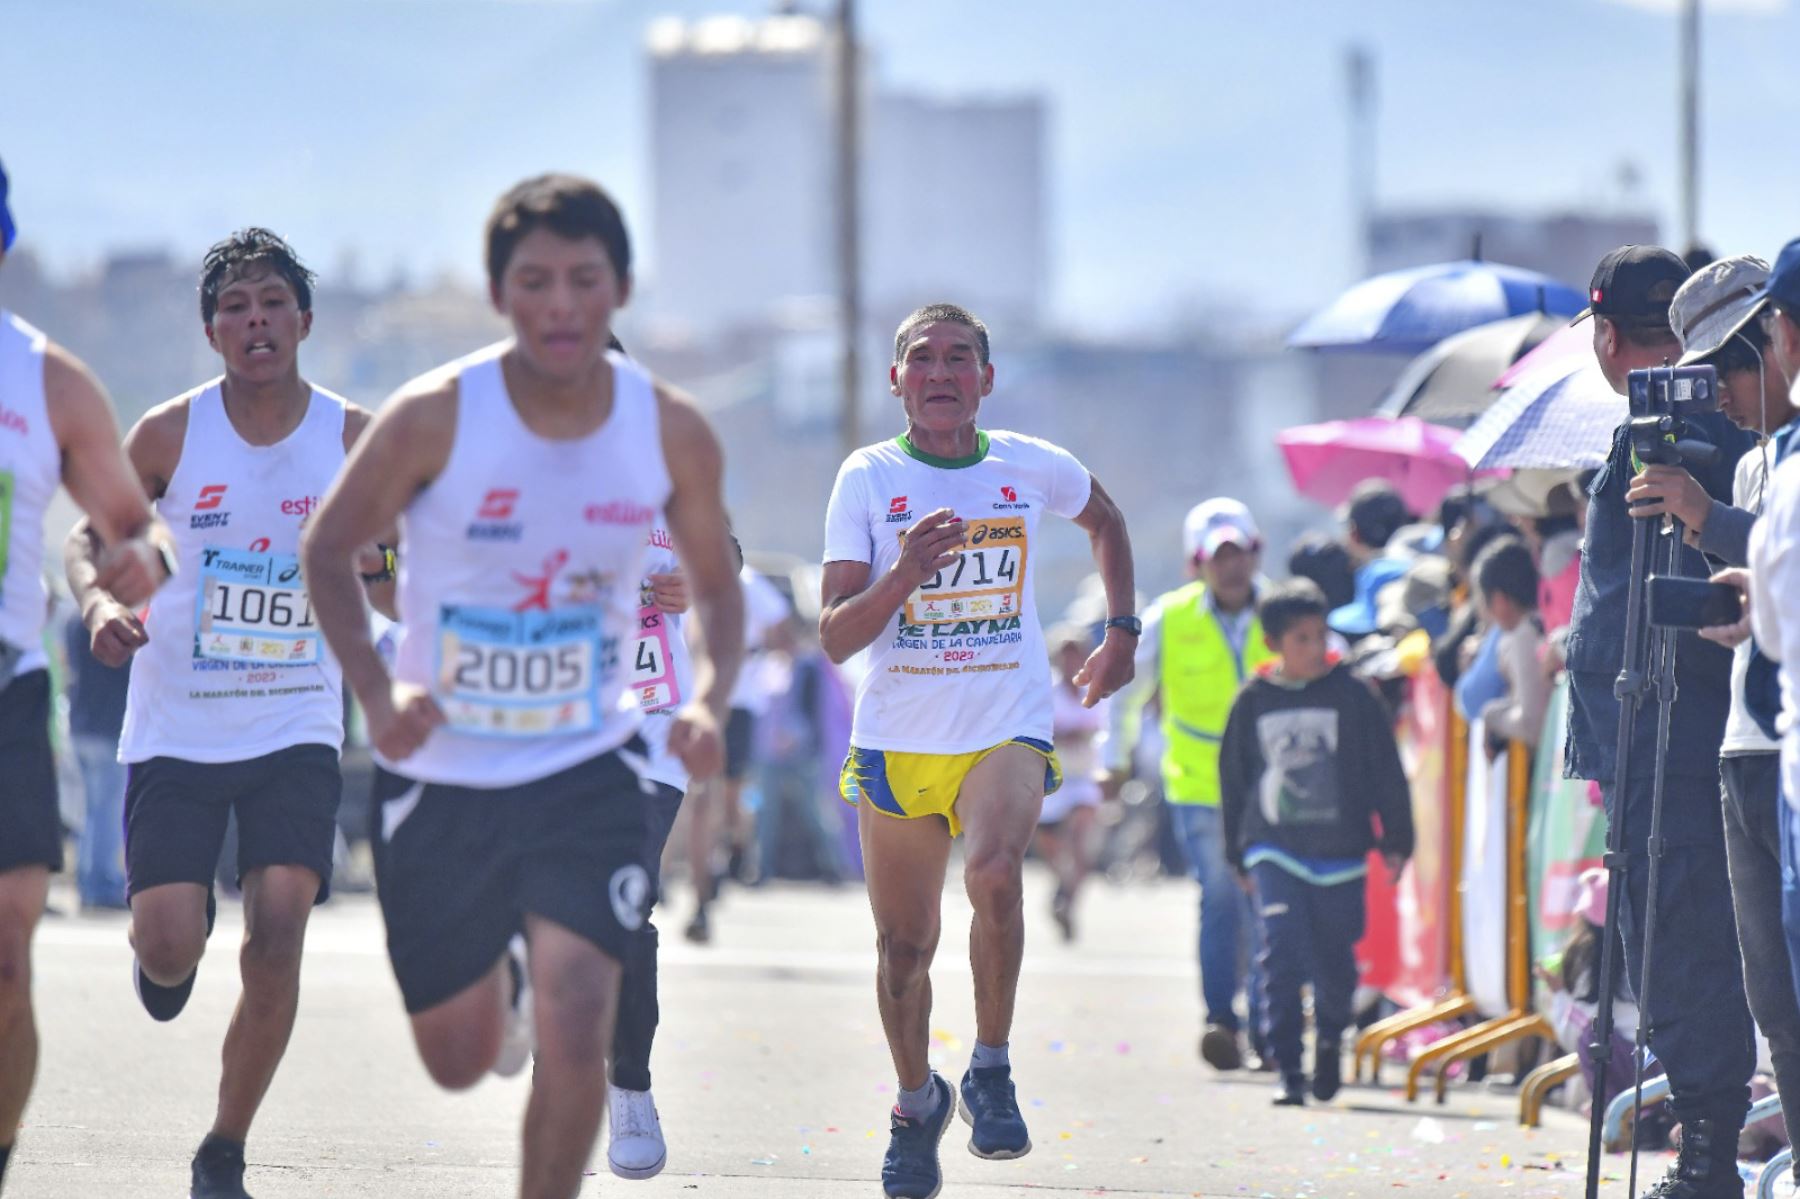 La competencia comenzó a las 08:00 horas en el distrito de Cayma con los recorridos de 42 km, 21 km, 10 km y 5 km en 18 categorías de 10 años de edad a más de 80 años.
Foto: ANDINA/ Cortesía Diego Ramos